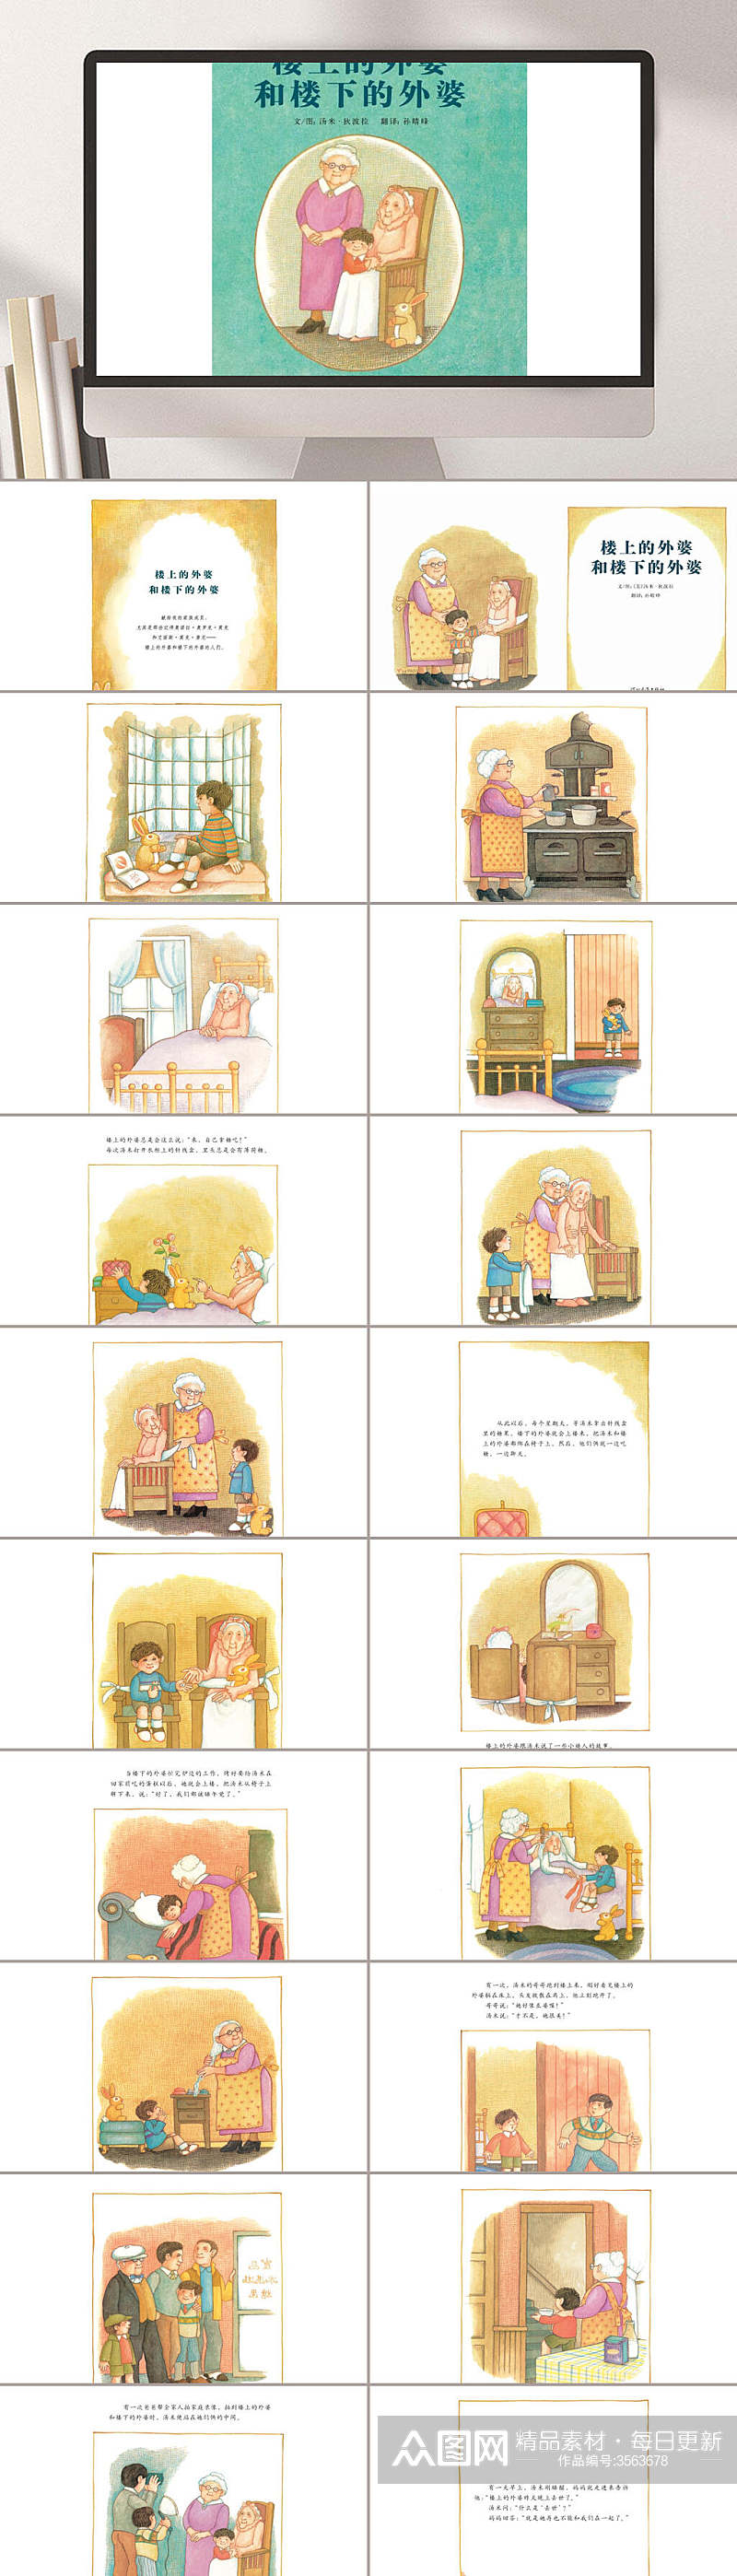 楼上的外婆和楼下的外婆儿童故事插画PPT素材